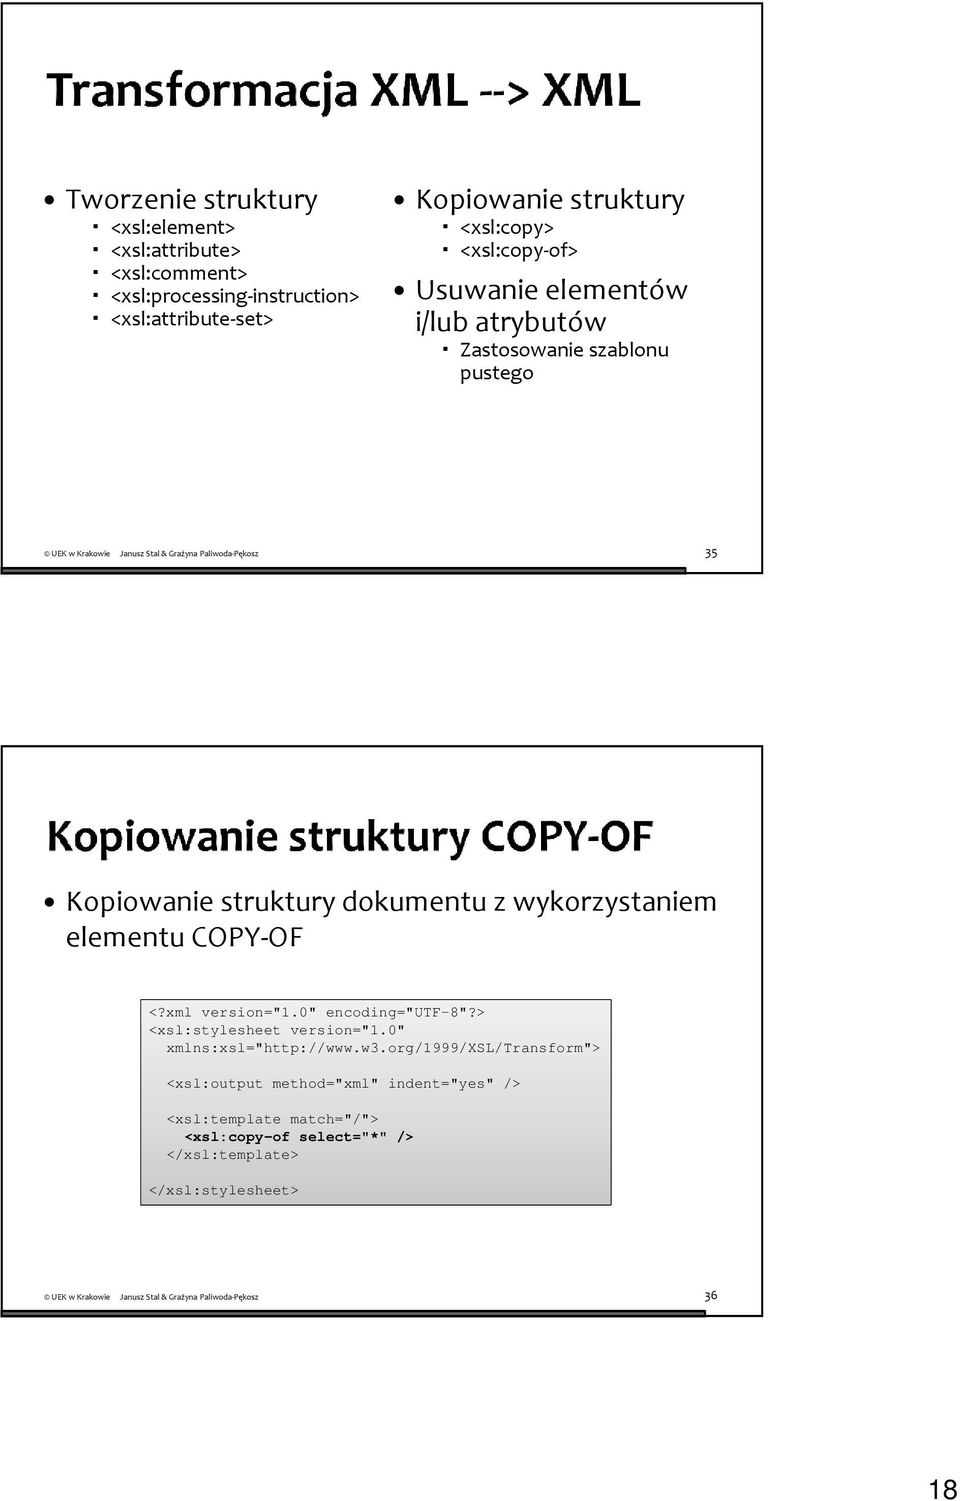 Kopiowanie struktury dokumentu z wykorzystaniem elementu COPY-OF <?xml version="1.0" encoding="utf-8"?